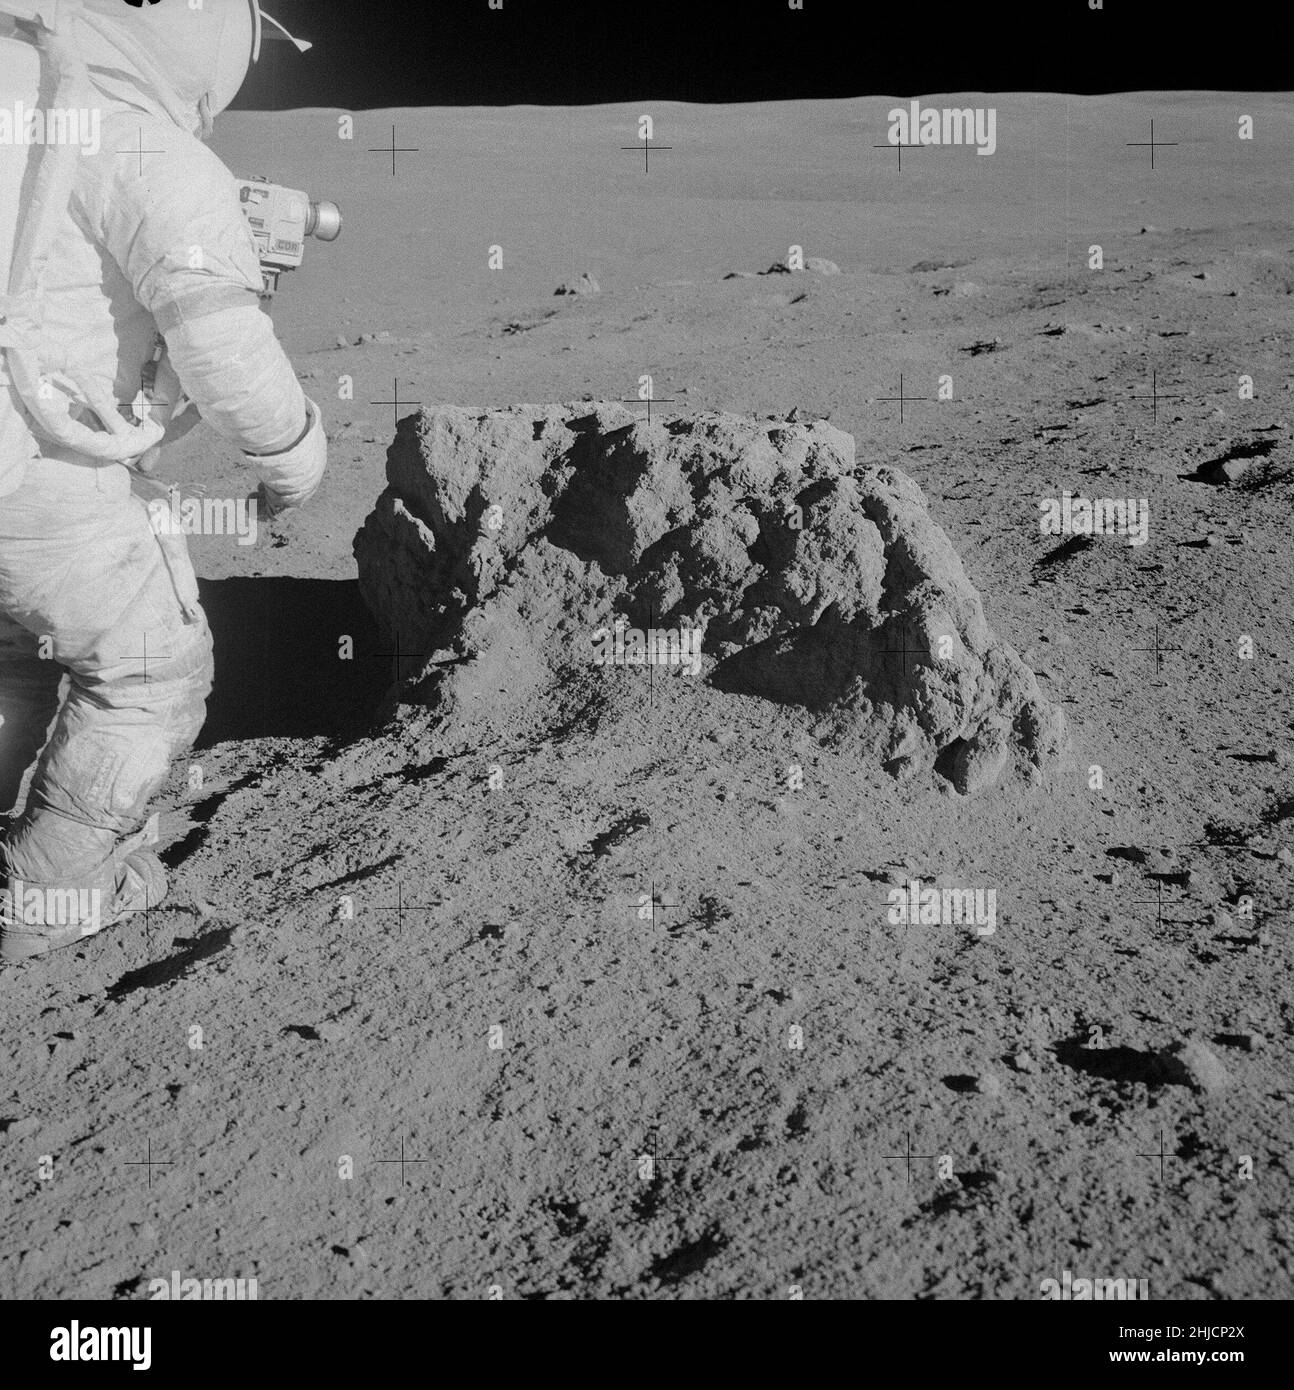 Apollo 14-Mission. Astronaut Alan Shepard neben dem Felsbrocken an Station B2. Im Apollo 14 Preliminary Science Report wird dieser Felsbrocken als Big Rock bezeichnet. Die obere Fläche ist ungewöhnlich flach und kann eine Bruchfläche darstellen. Der Fels ist 0,6 Meter hoch und etwa 1,5 Meter lang. Wir können Shepards Kamera mit CDR (Commander) auf der Seite sehen, die Zange unter seinen Schläuchen. Beachte den Schmutz auf seinen Stiefeln und Knien. Das Bild wurde in Richtung Norden aufgenommen. Shepard und Mitchell sind einen kleinen Anstieg hinaufgekommen und in der Ferne hinter dem Felsbrocken können wir einen großen Krater sehen. Stockfoto